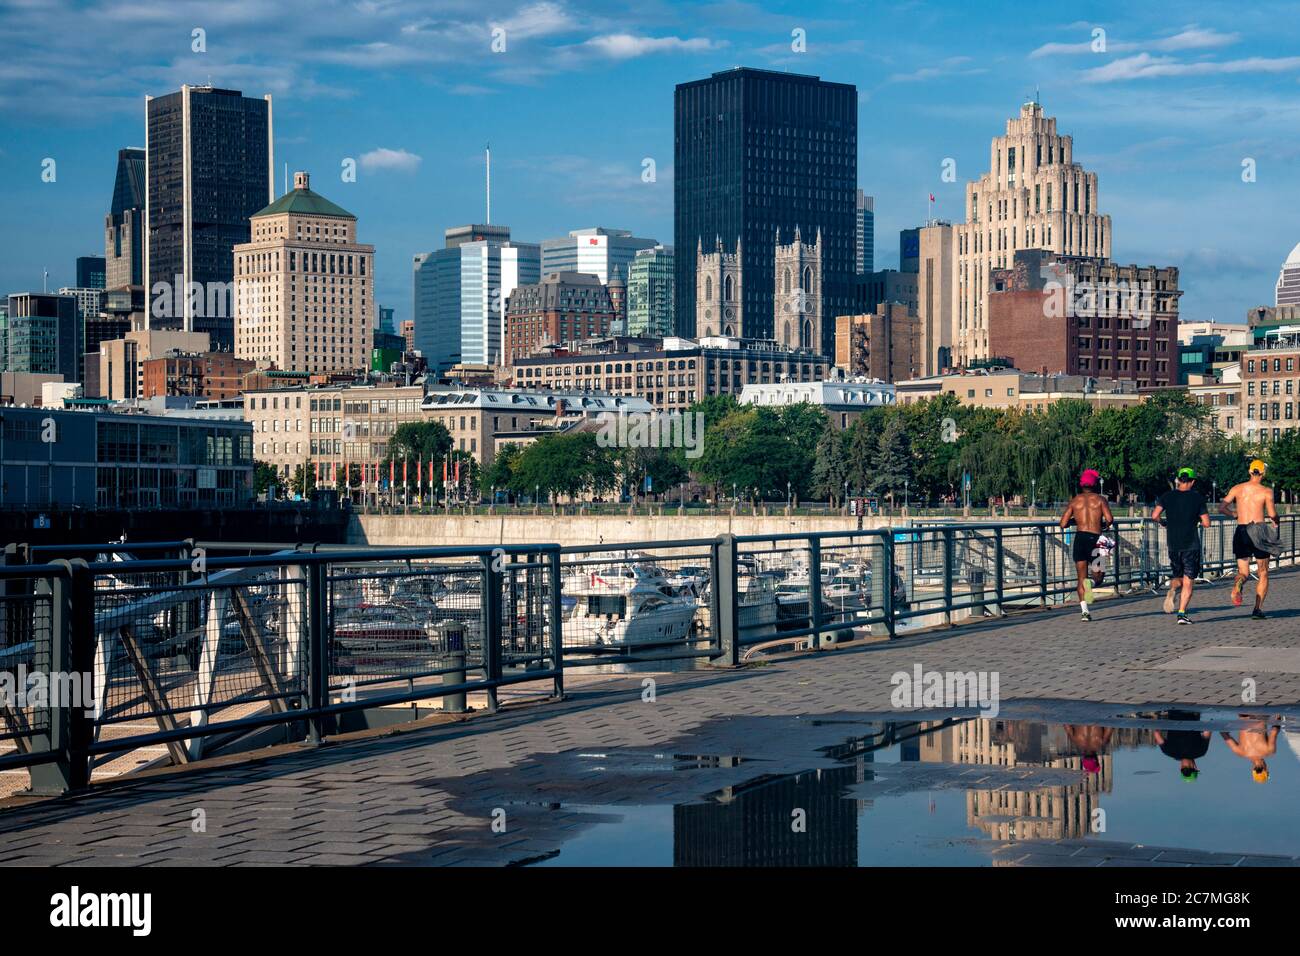 Blick auf die Skyline von Montreal mit Joggern im Vordergrund in Montreal, Kanada - Provinz Quebec. Stockfoto